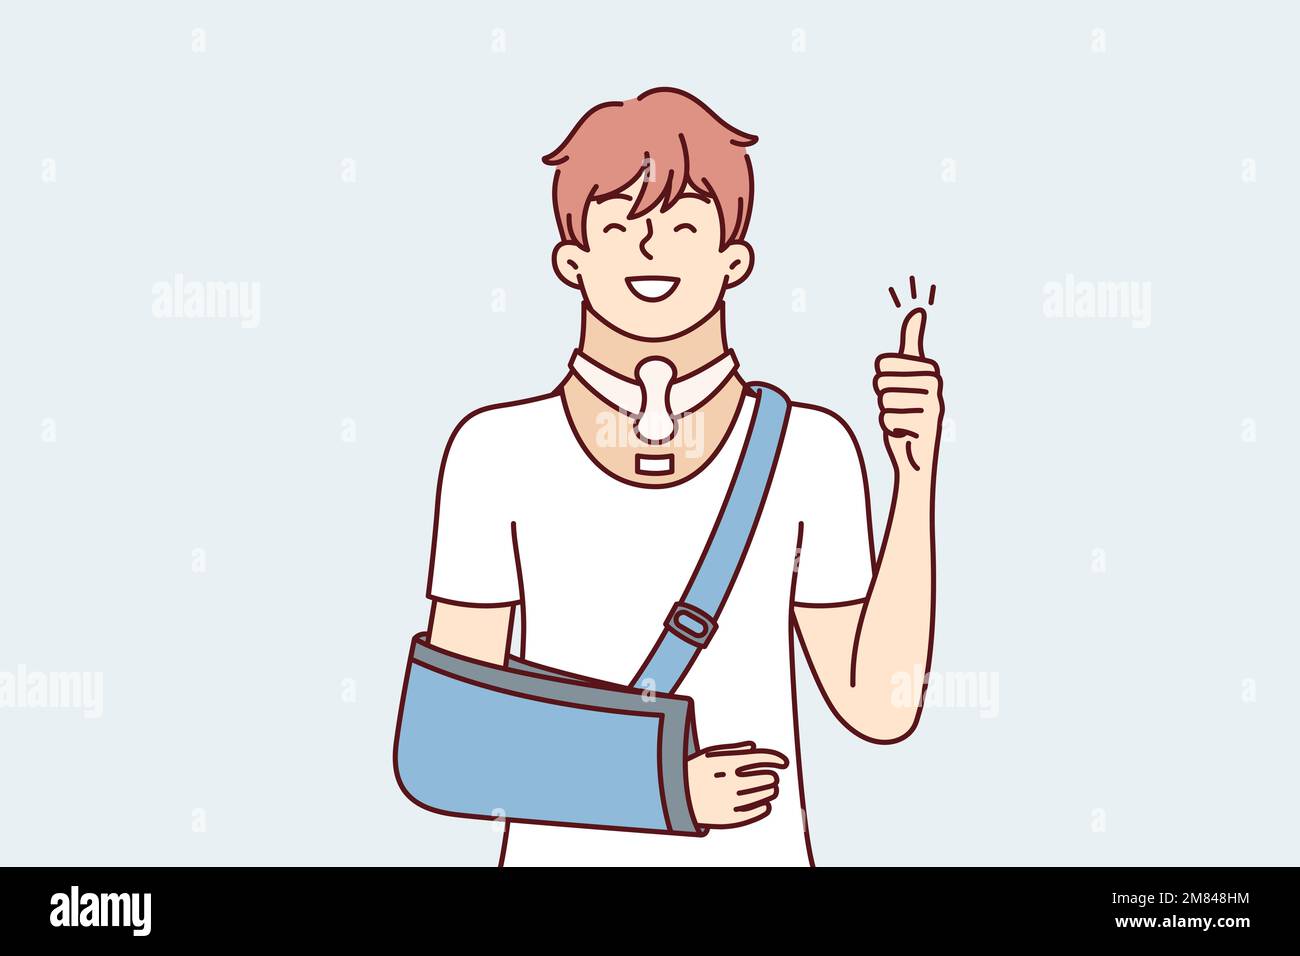 Positiver junger Mann mit gebrochenem Arm zeigt Daumen nach oben als Zeichen der Dankbarkeit für Ärzte. Optimistischer Mann mit orthopädischem Halsband zur Kopfstützung, die für die Rehabilitation nach einer Verletzung notwendig ist. Flaches Vektordesign Stock Vektor